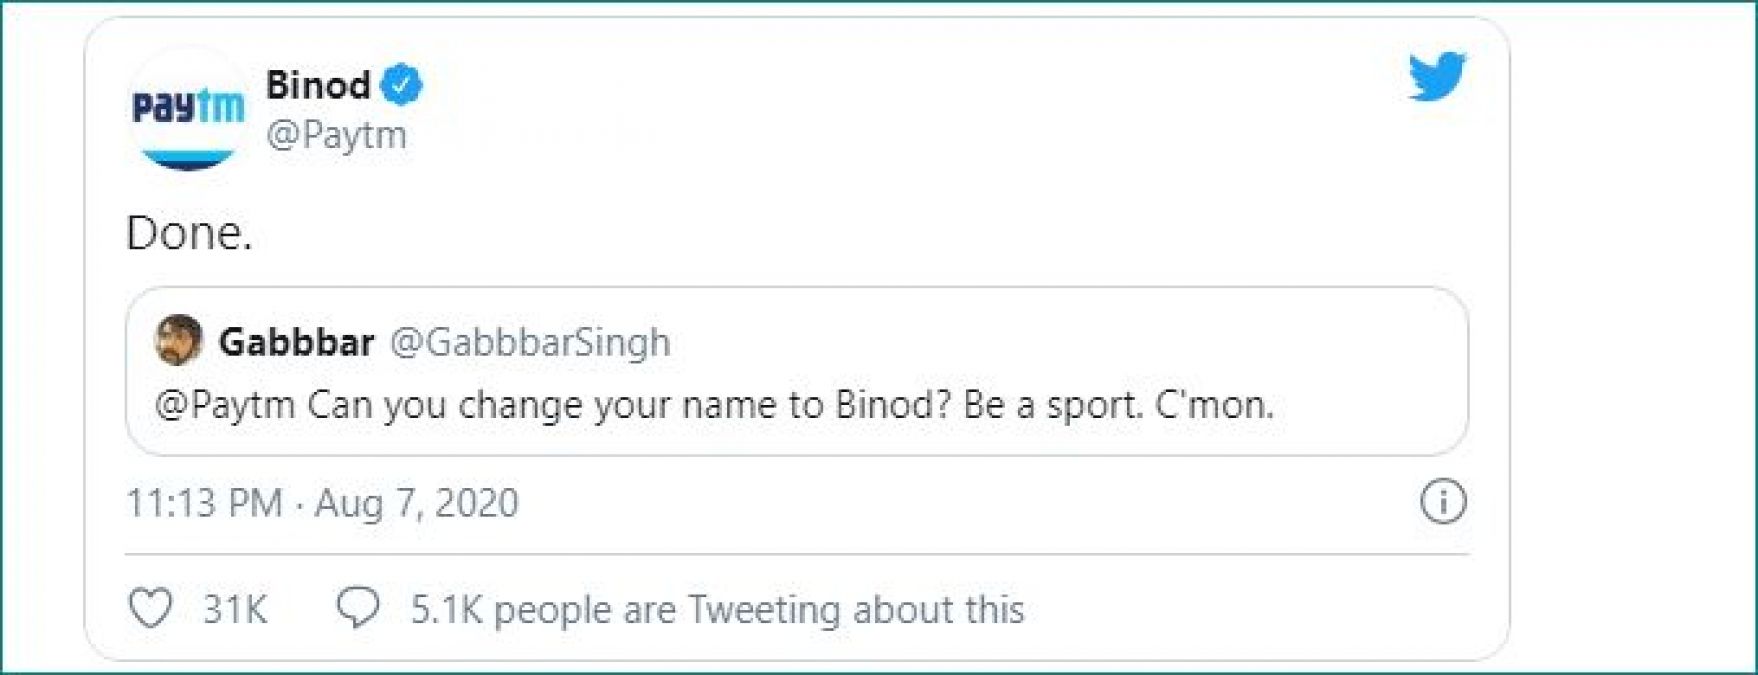 ट्विटर पर Paytm ने अपना नाम बदलकर रखा 'Binod', जानिए क्यों?